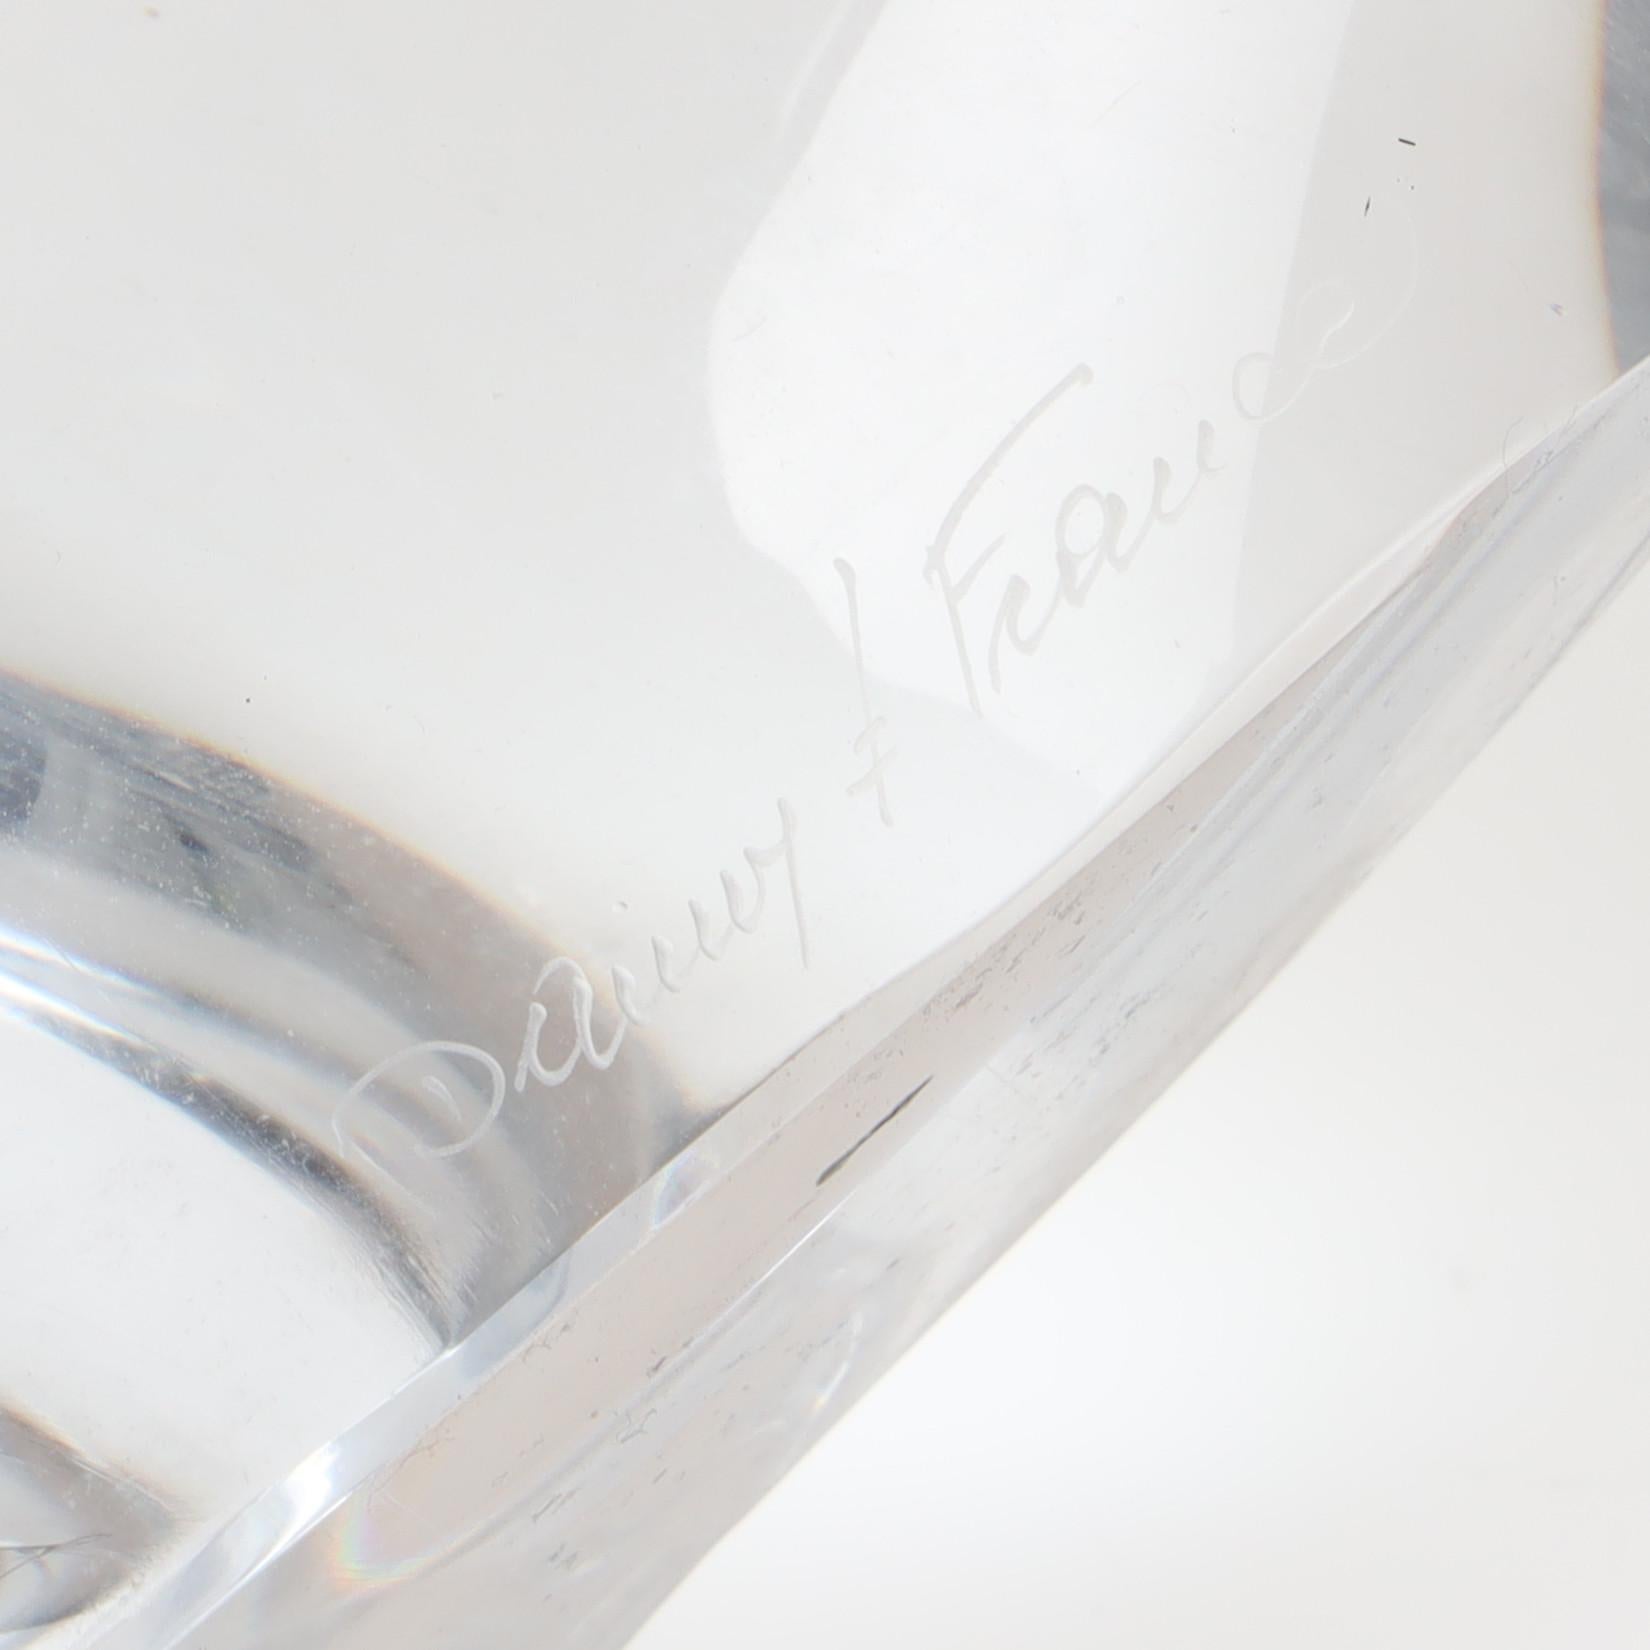 Daum Tischlampe in klar  gegossener Kristall, Frankreich 1960. Signiert DAUM auf dem unteren Teil 
22 cm/ 9 Zoll  Höhe ohne Lampenschirm
Guter Zustand 